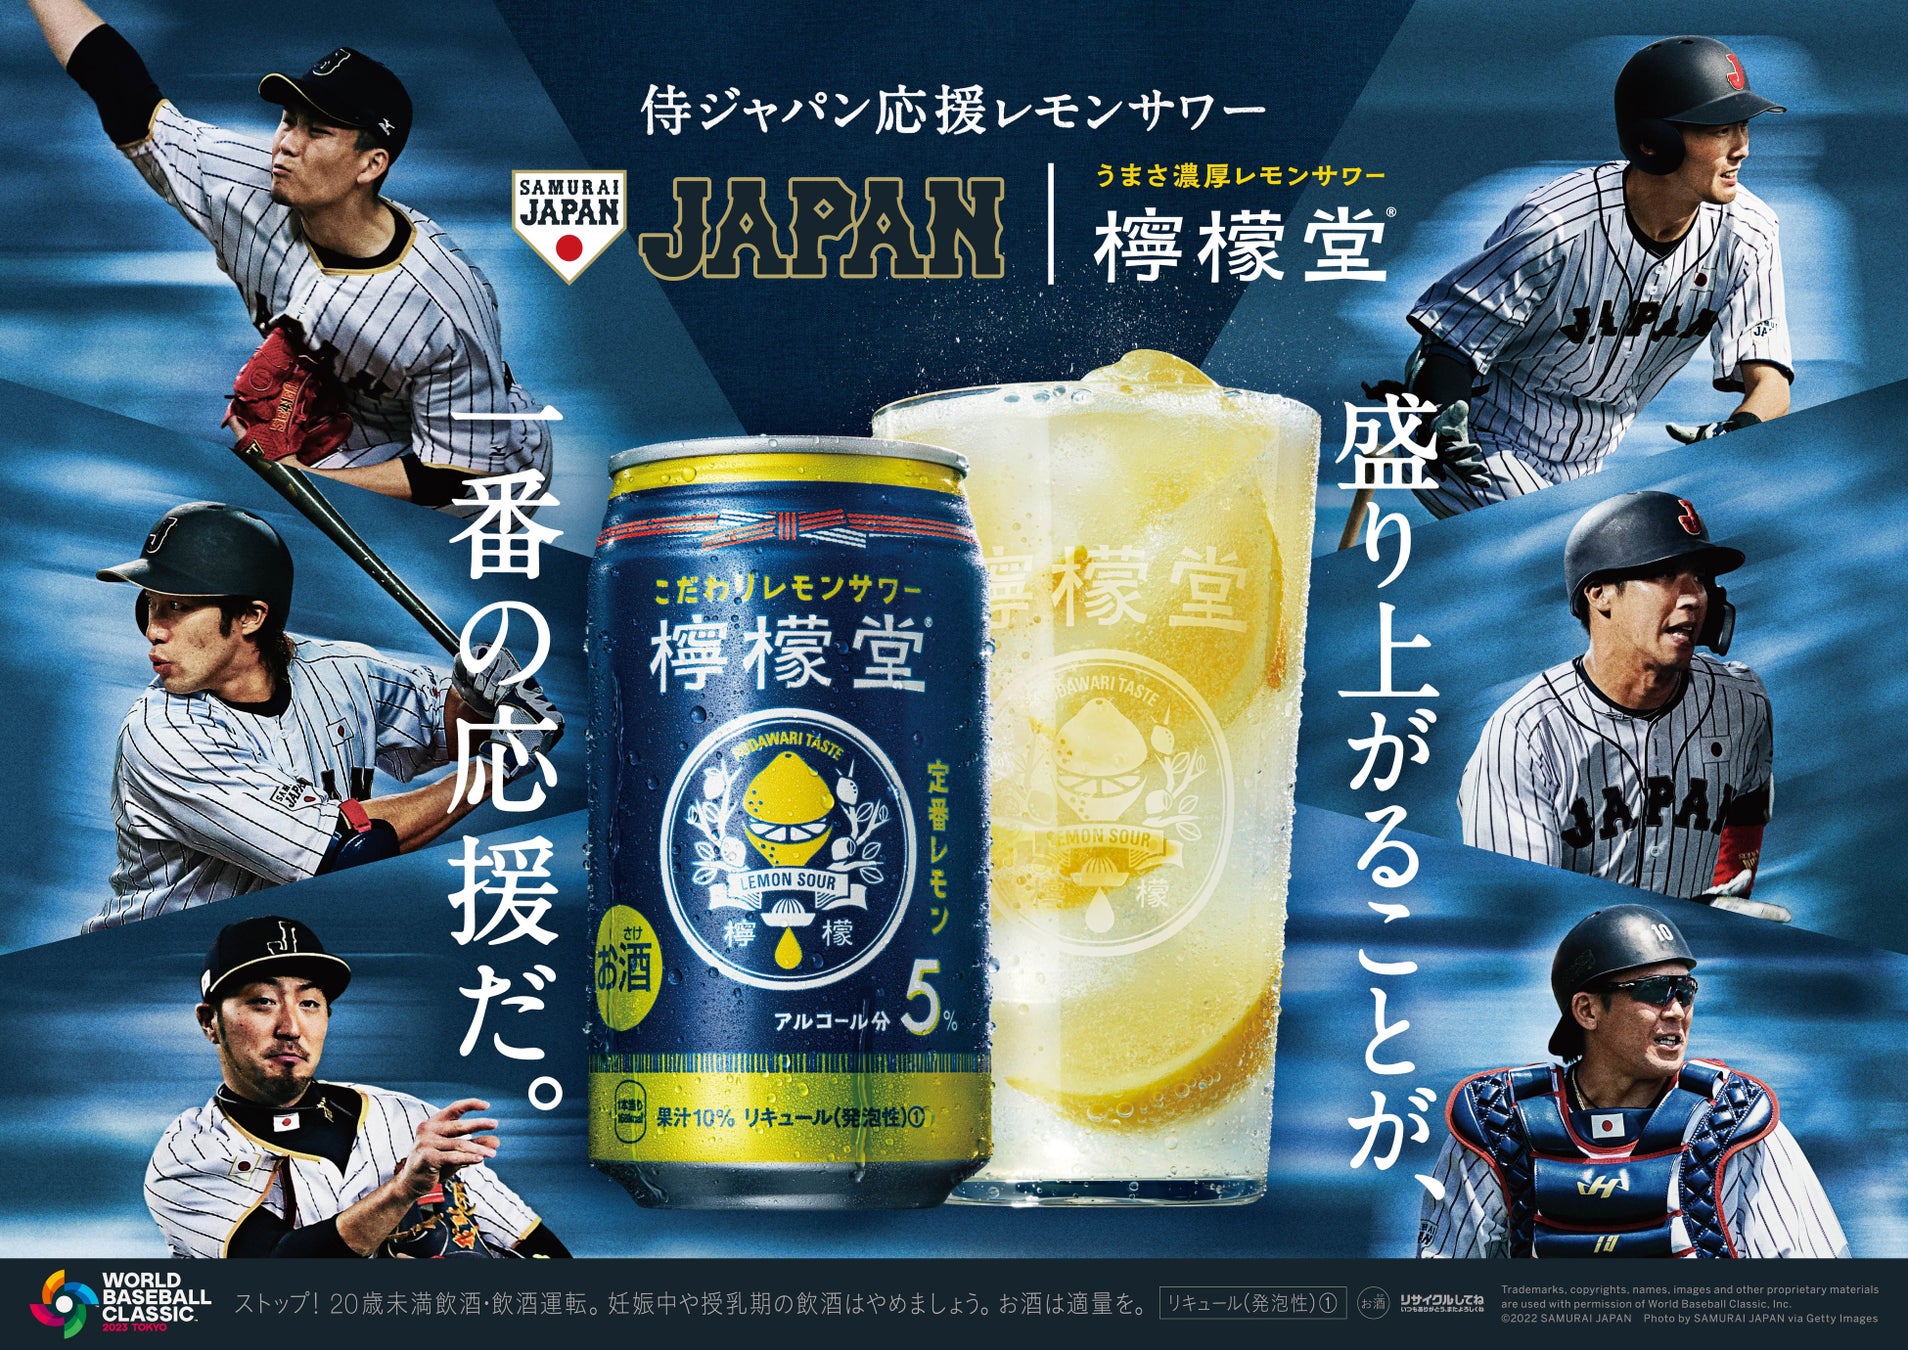 “盛り上がることが、一番の応援だ”「檸檬堂」が2月24日より、「World Baseball Classic™東京プール」の開催に向けて侍ジャパンを応援するキャンペーンを開始